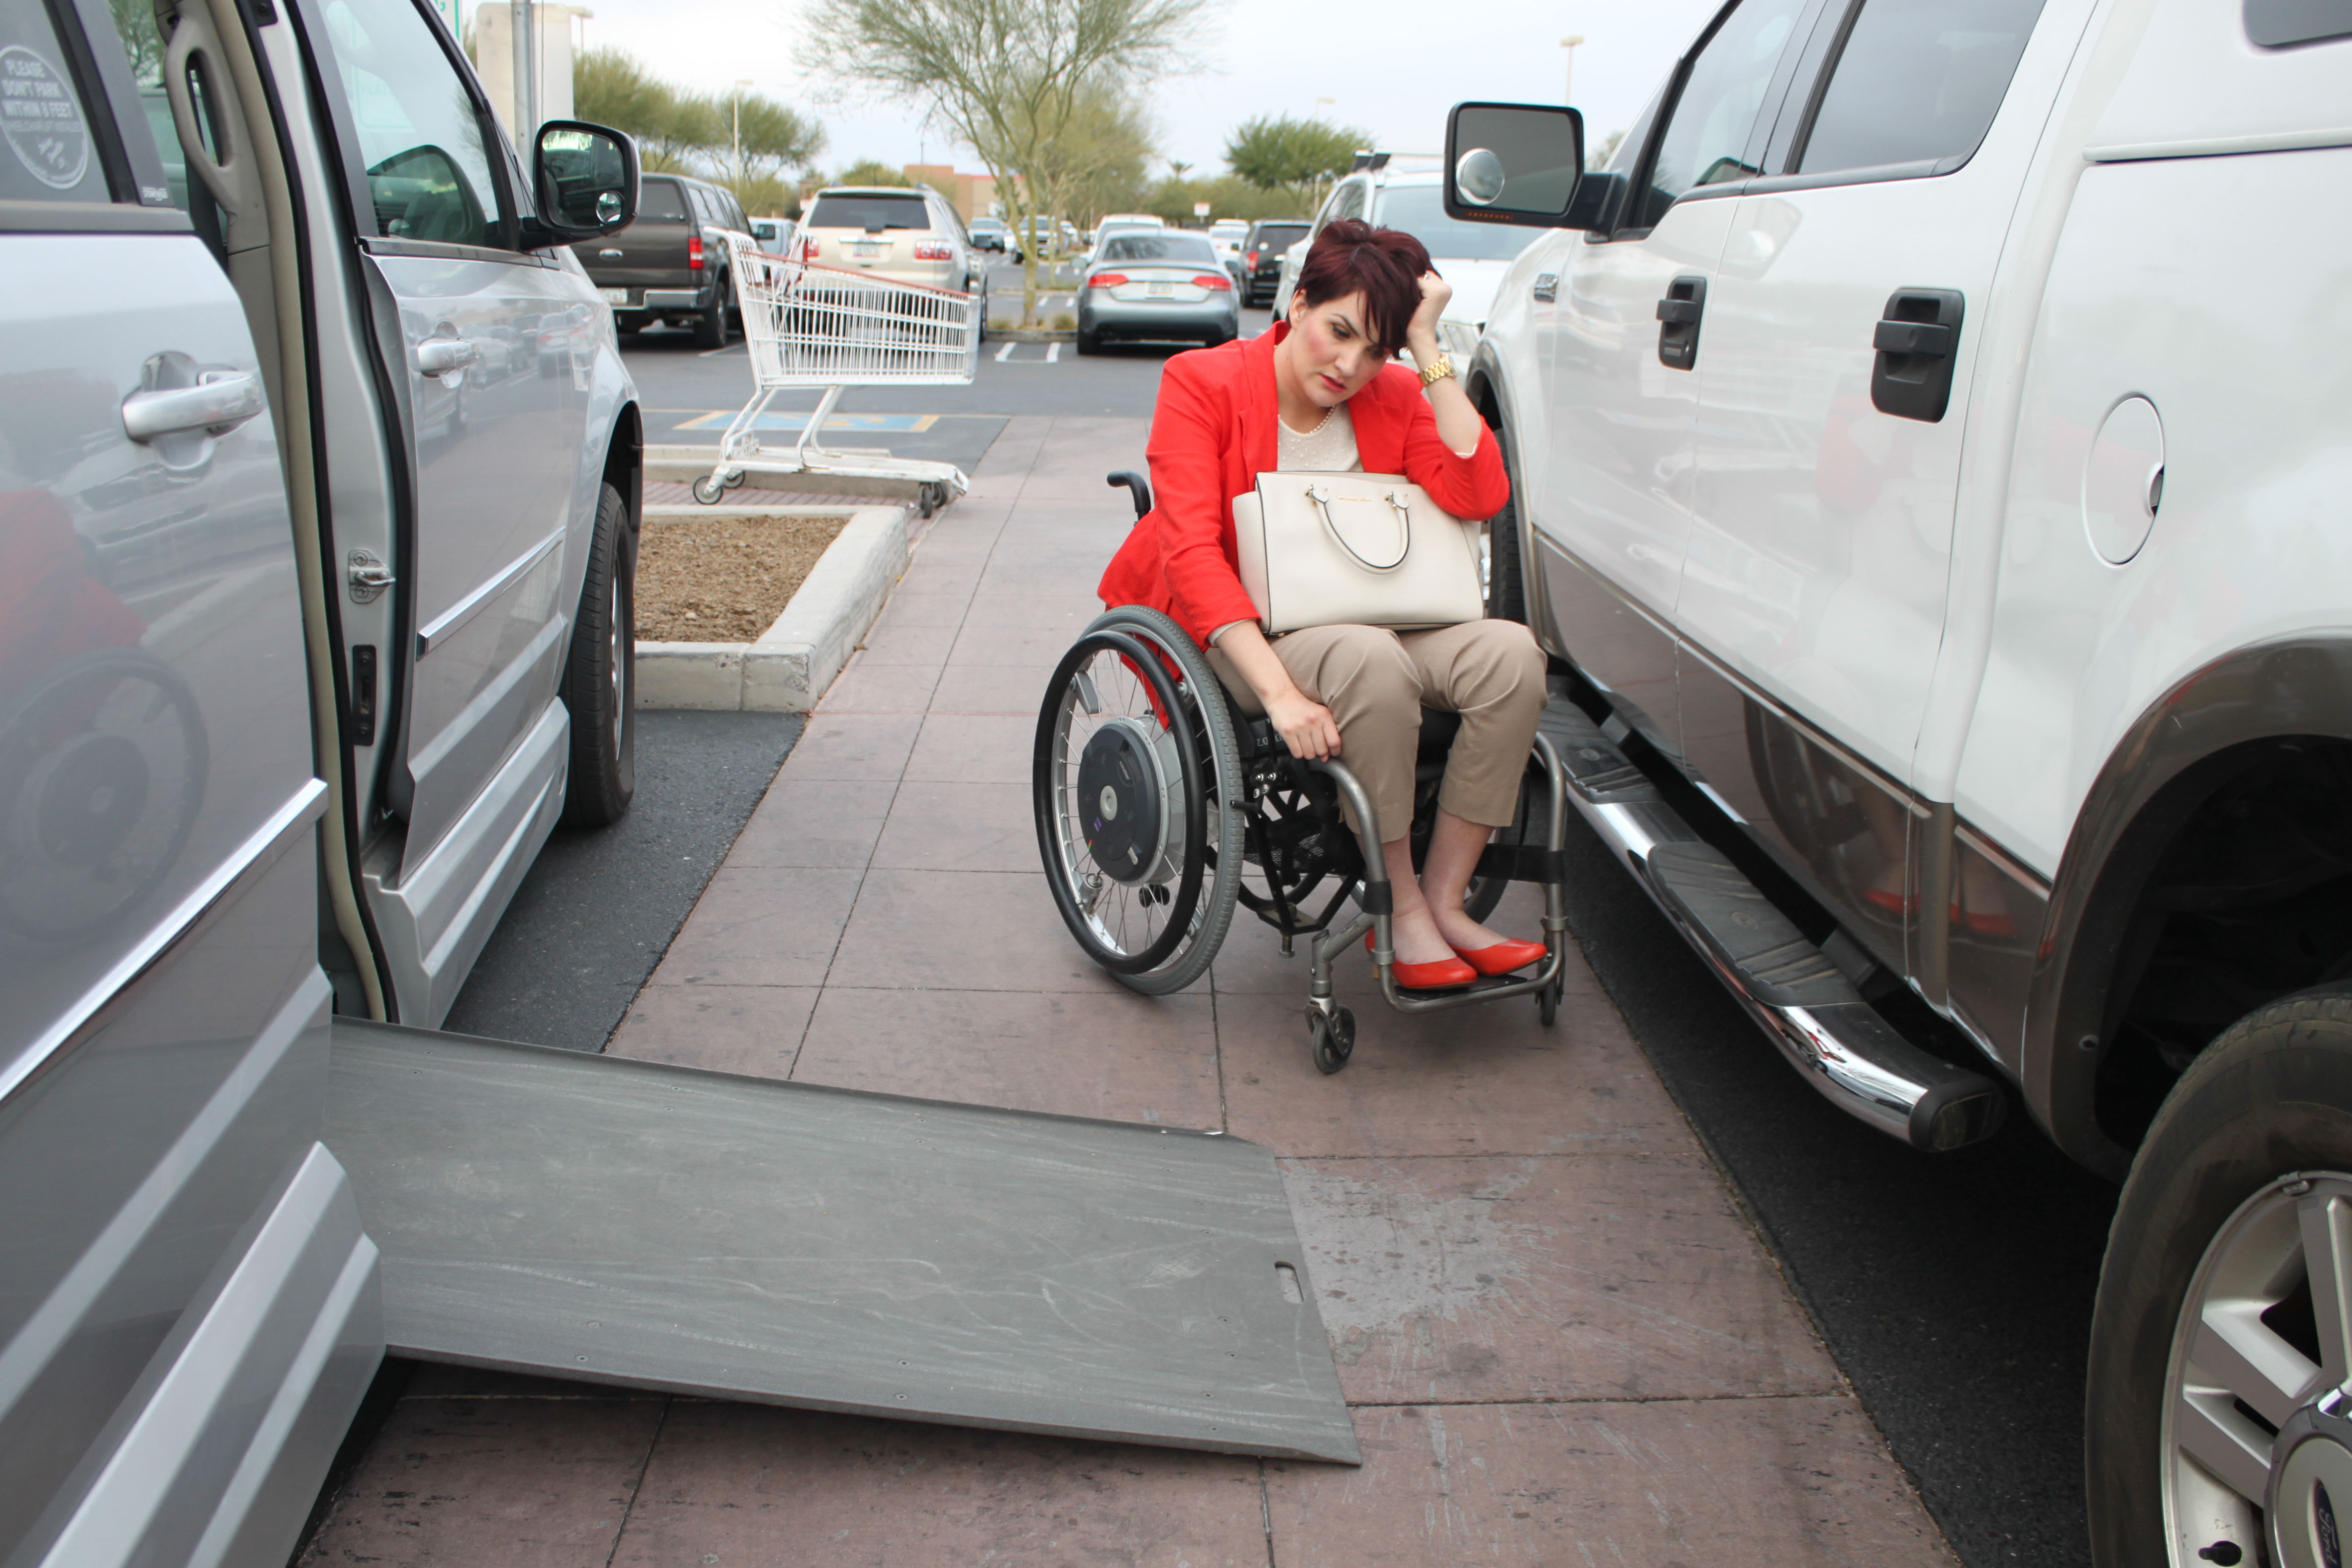 PL ESFFFDV original - I Abused Handicapped Parking, But Then I Met Her